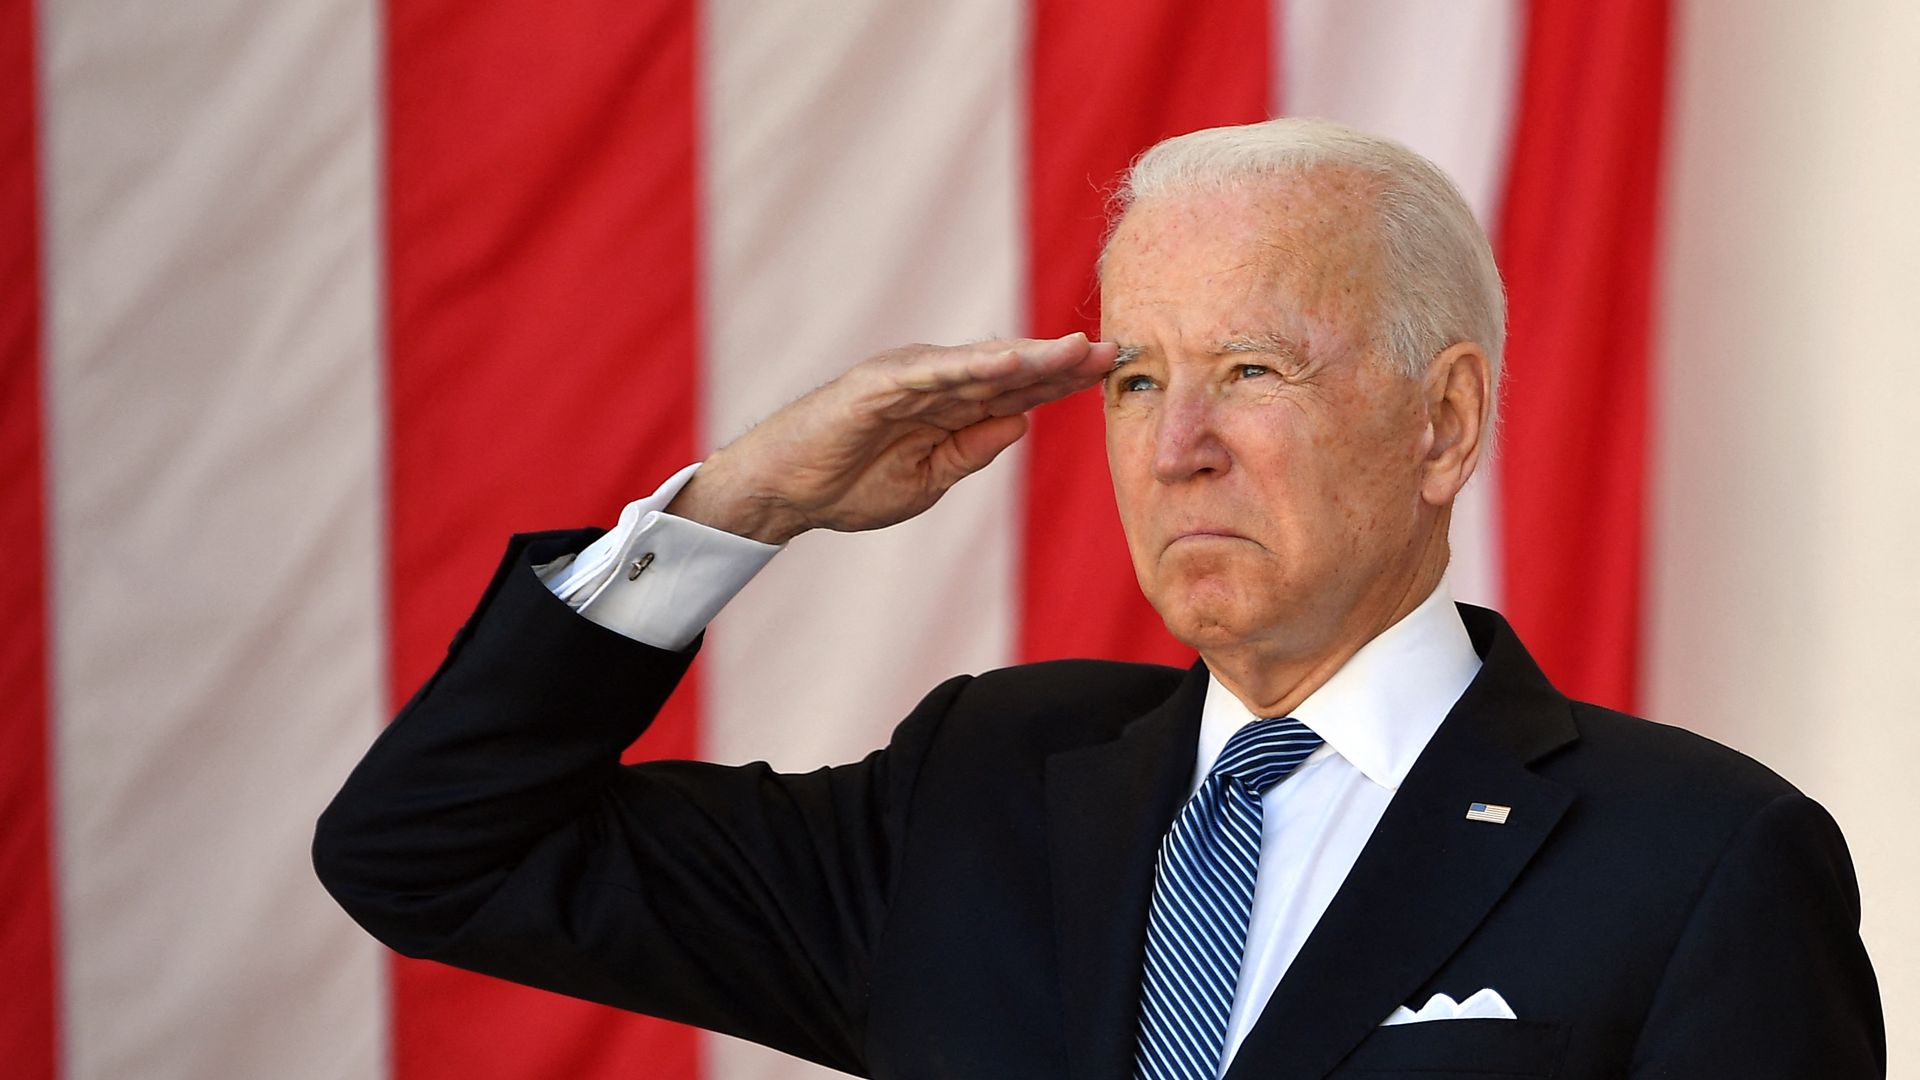 Biden saluting